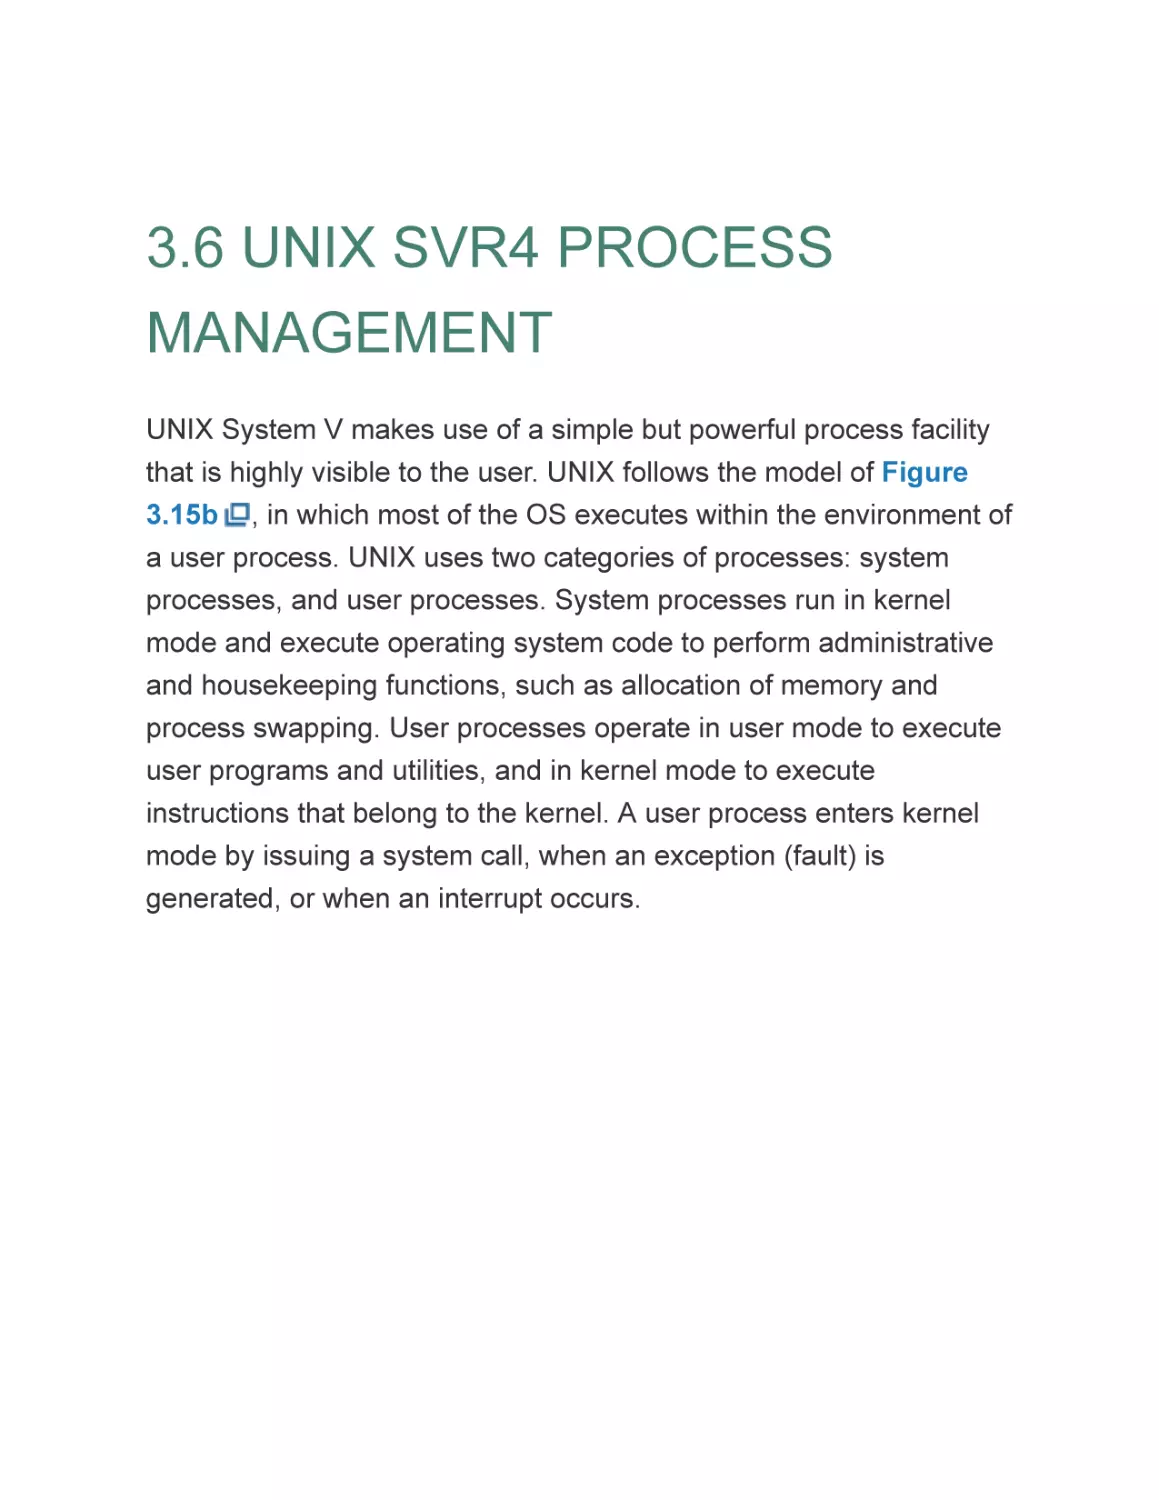 3.6 UNIX SVR4 PROCESS MANAGEMENT